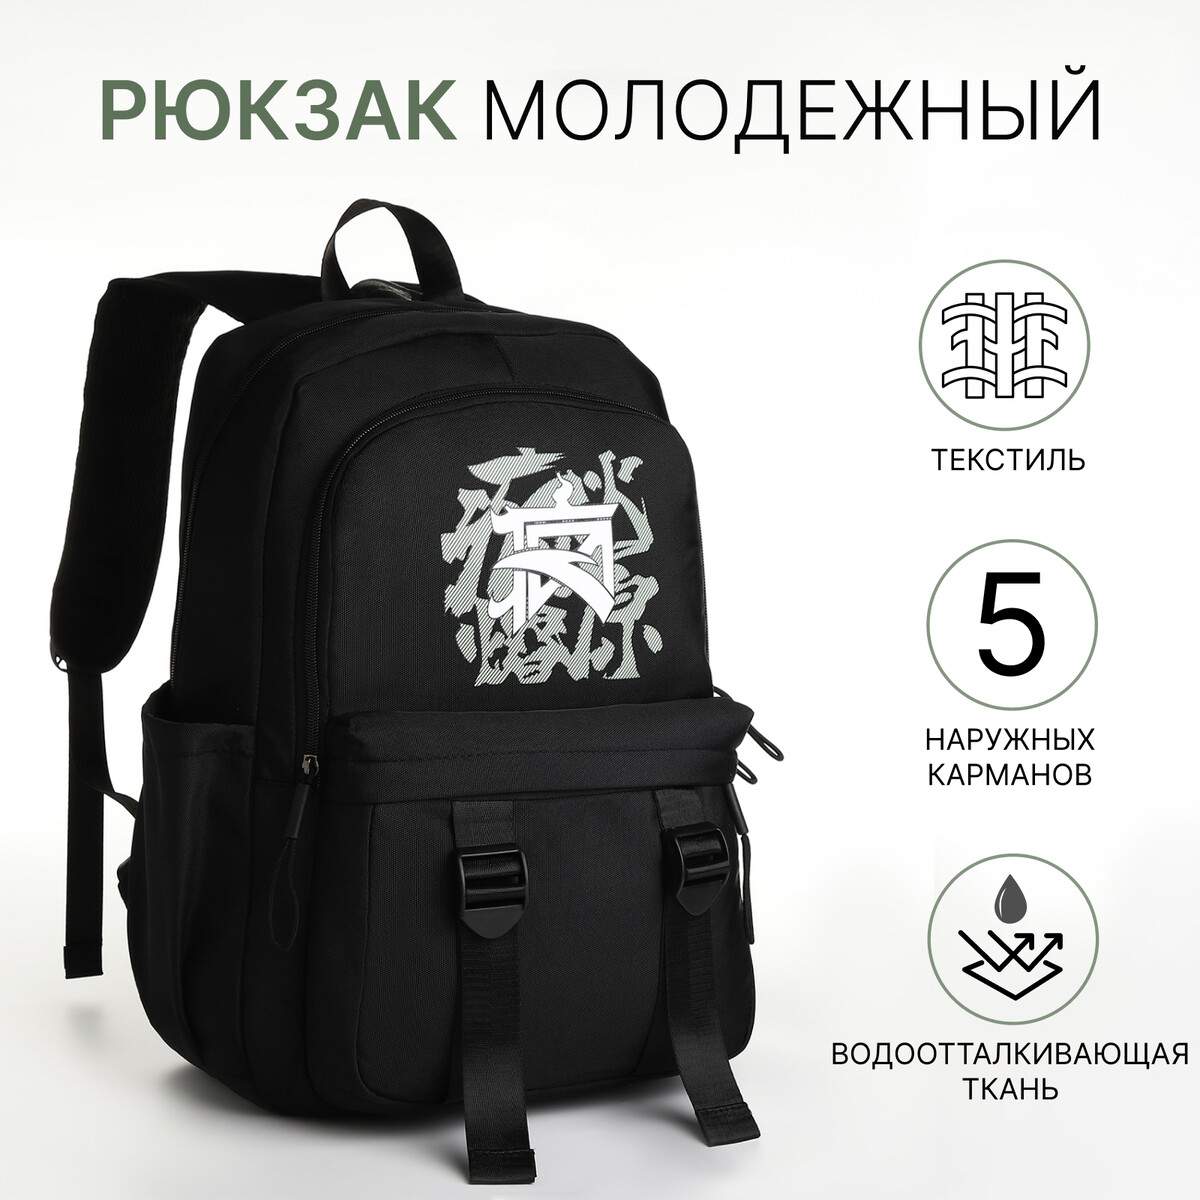 Рюкзак школьный на молнии, 5 карманов, цвет черный